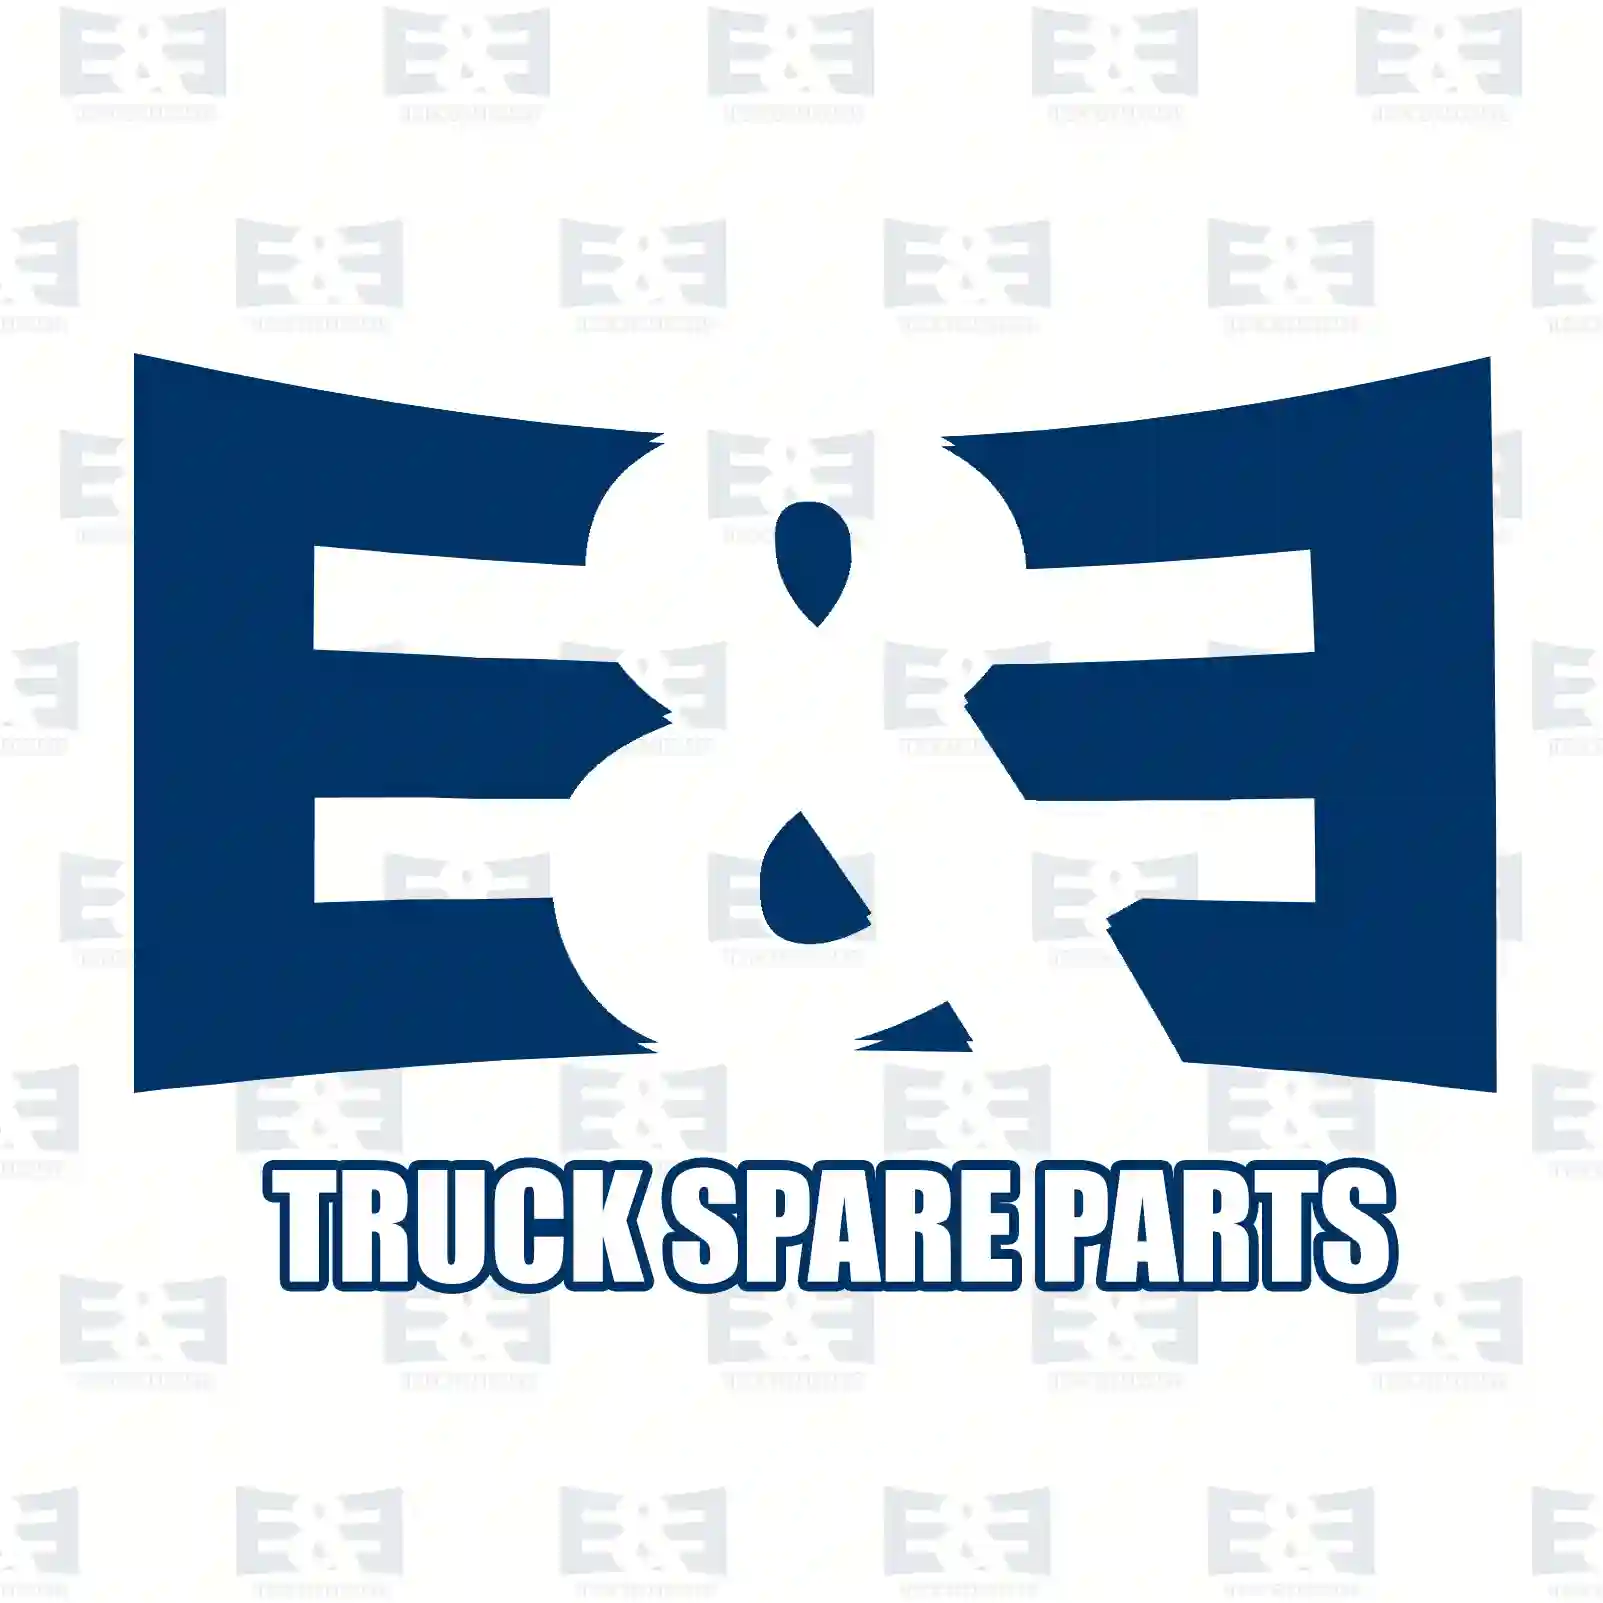 Control Arm Control arm, right, EE No 2E2270737 ,  oem no:352165, 3521H2, 3521J3, 1308600080, 1308601080, 1317240080, 1317241080, 1320787080, 1331940080, 1339467080, 352165, 3521H2, 3521J3, 3523AP E&E Truck Spare Parts | Truck Spare Parts, Auotomotive Spare Parts